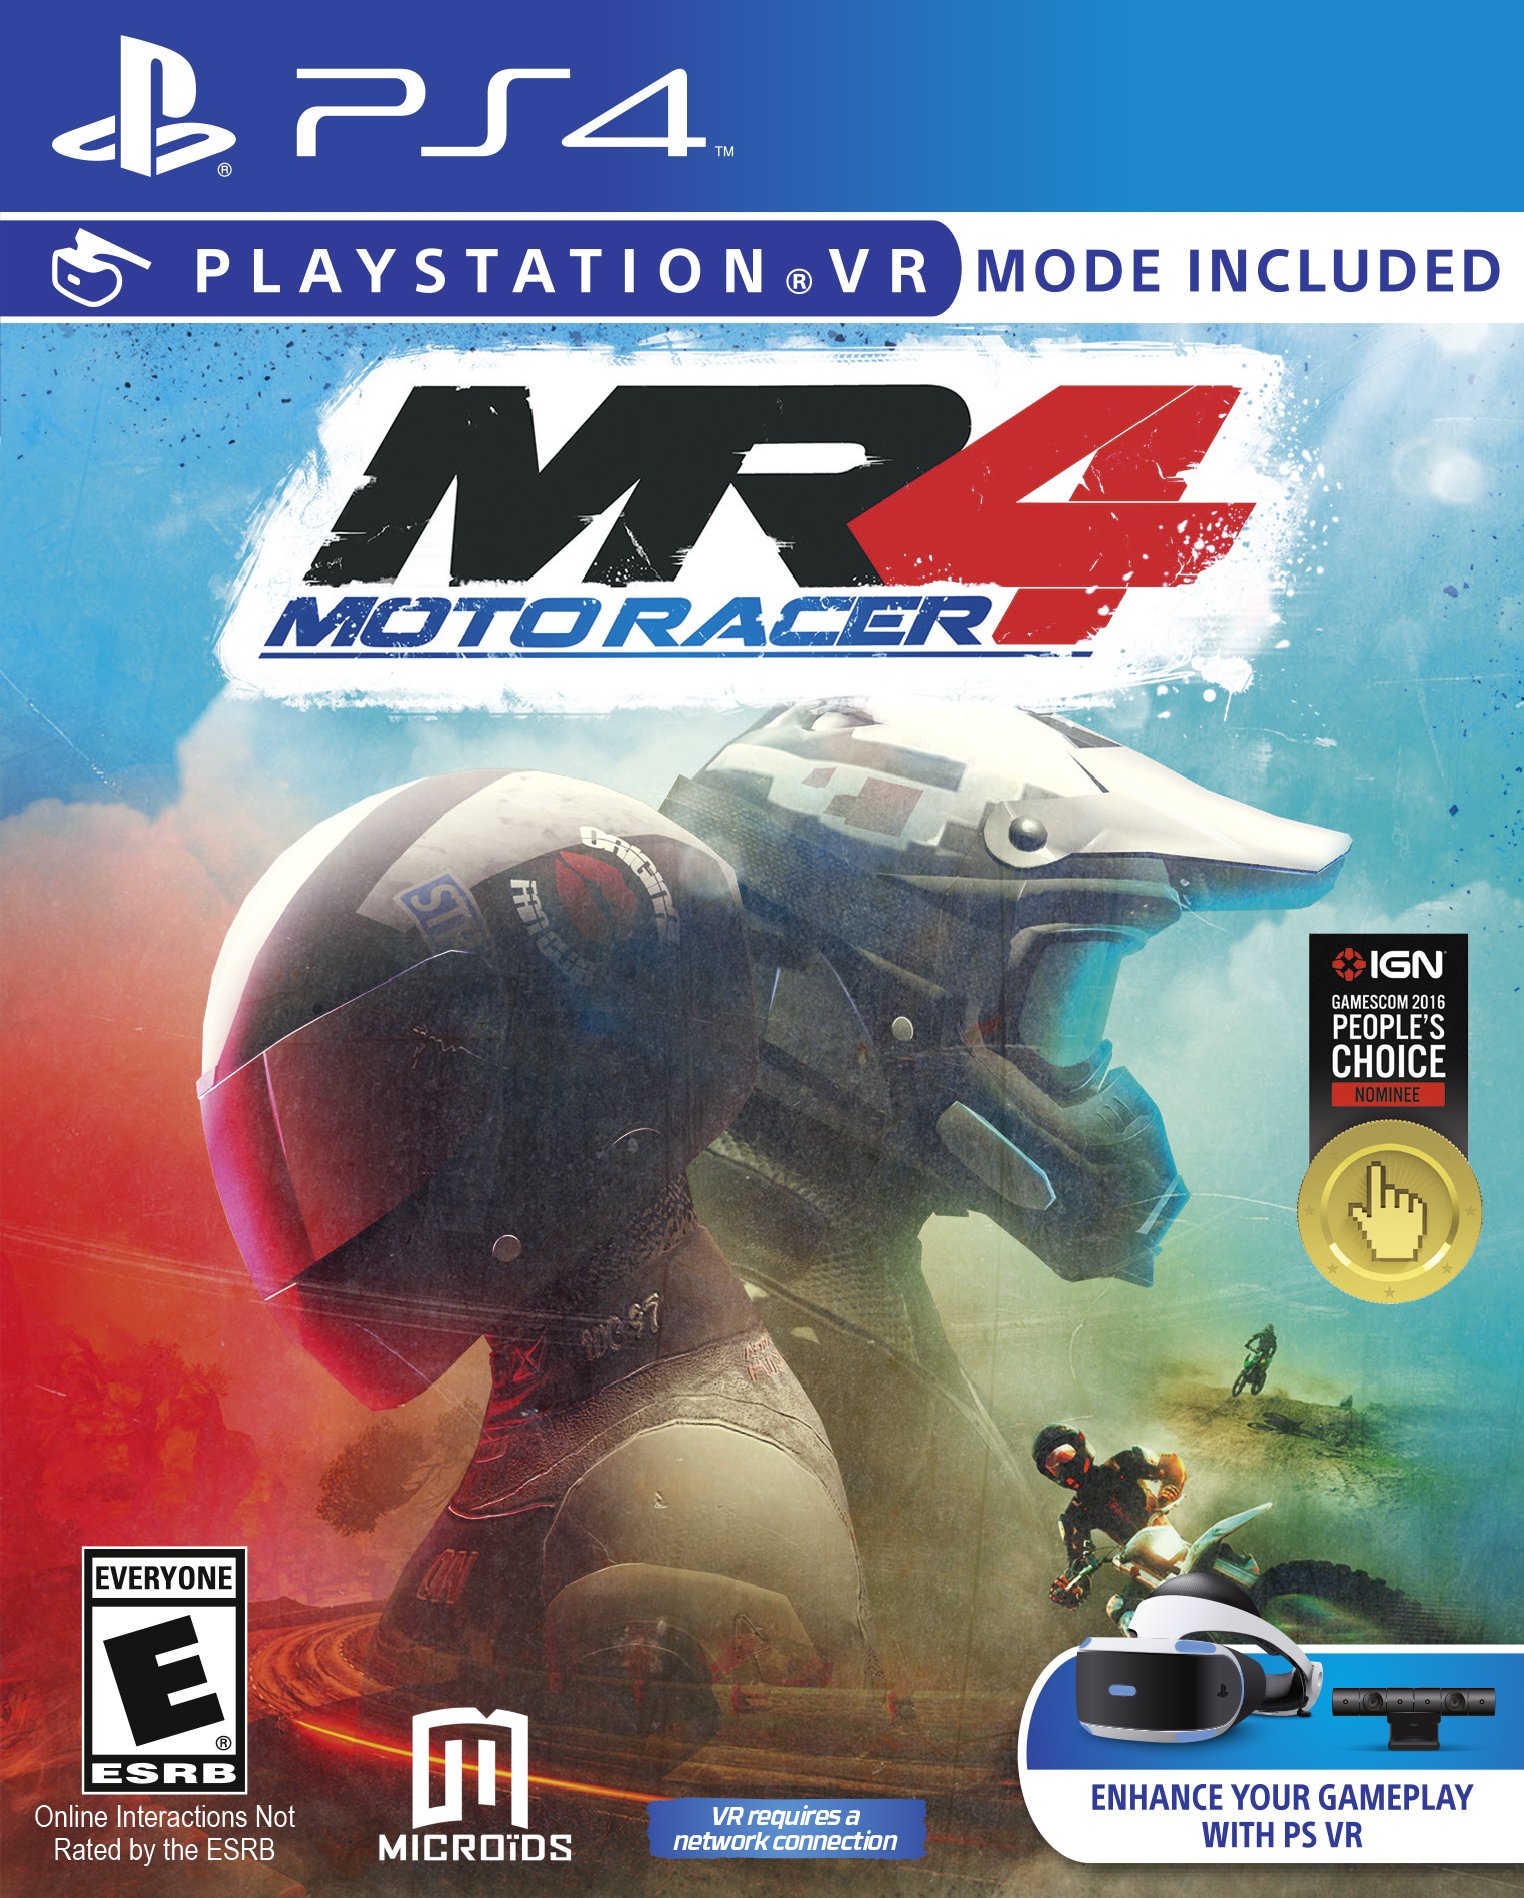 Moto Racer MR4 Playstation VR